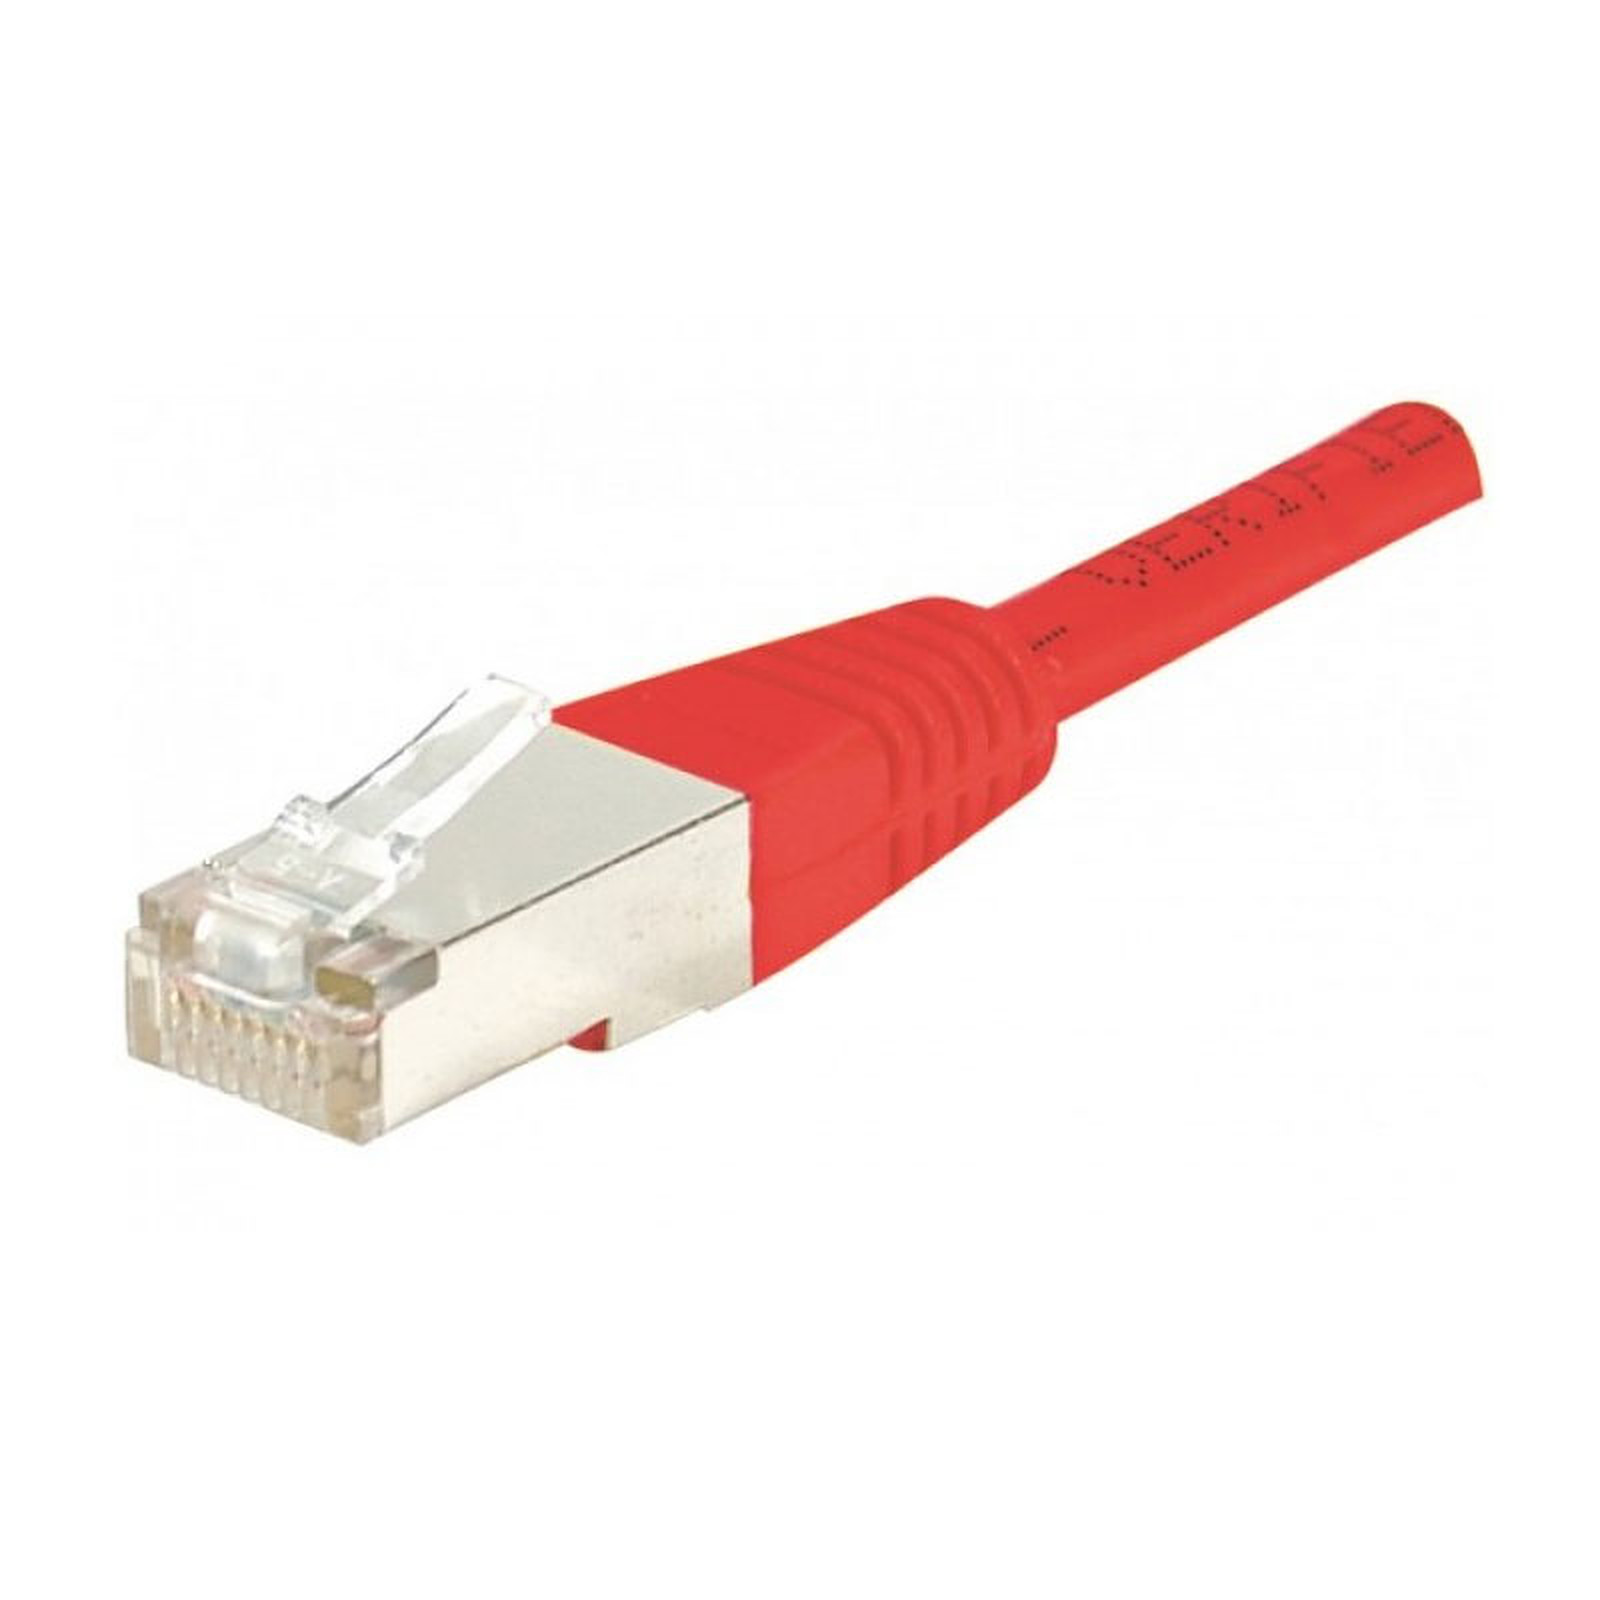 Cable RJ45 categorie 6 F/UTP 2 m (Rouge) - Cable RJ45 Generique